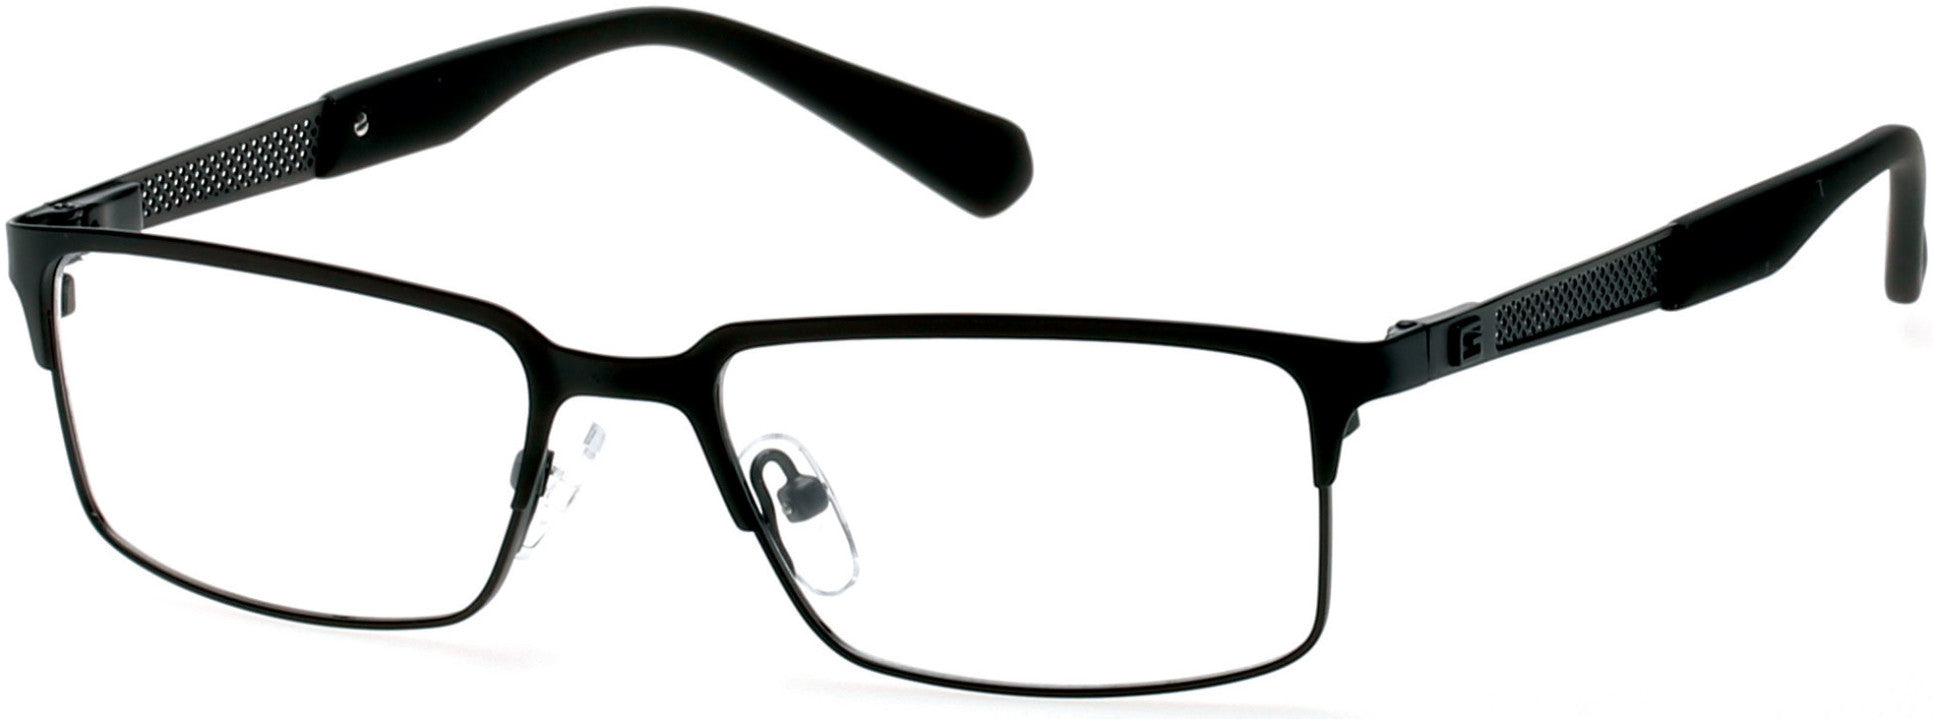 Guess GU1861 Eyeglasses 002-002 - Matte Black